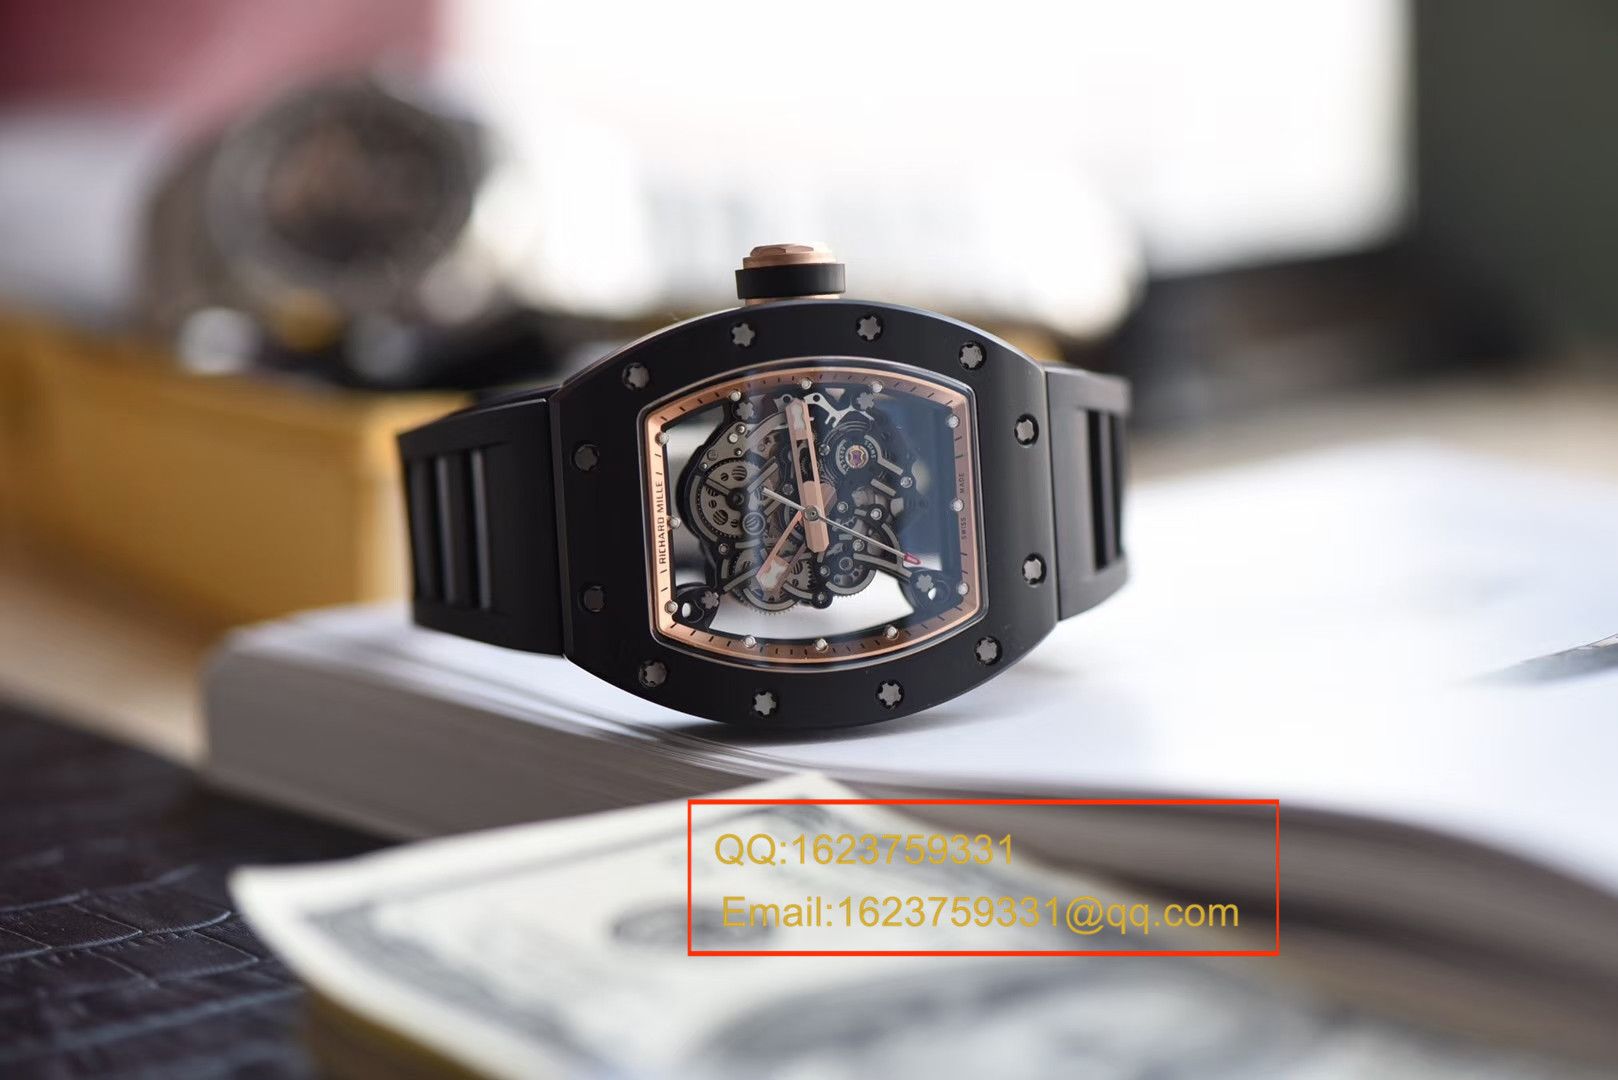 【独家视频评测KV一比一超A精仿手表】理查德米尔RICHARD MILLE男士系列RM 055腕表 